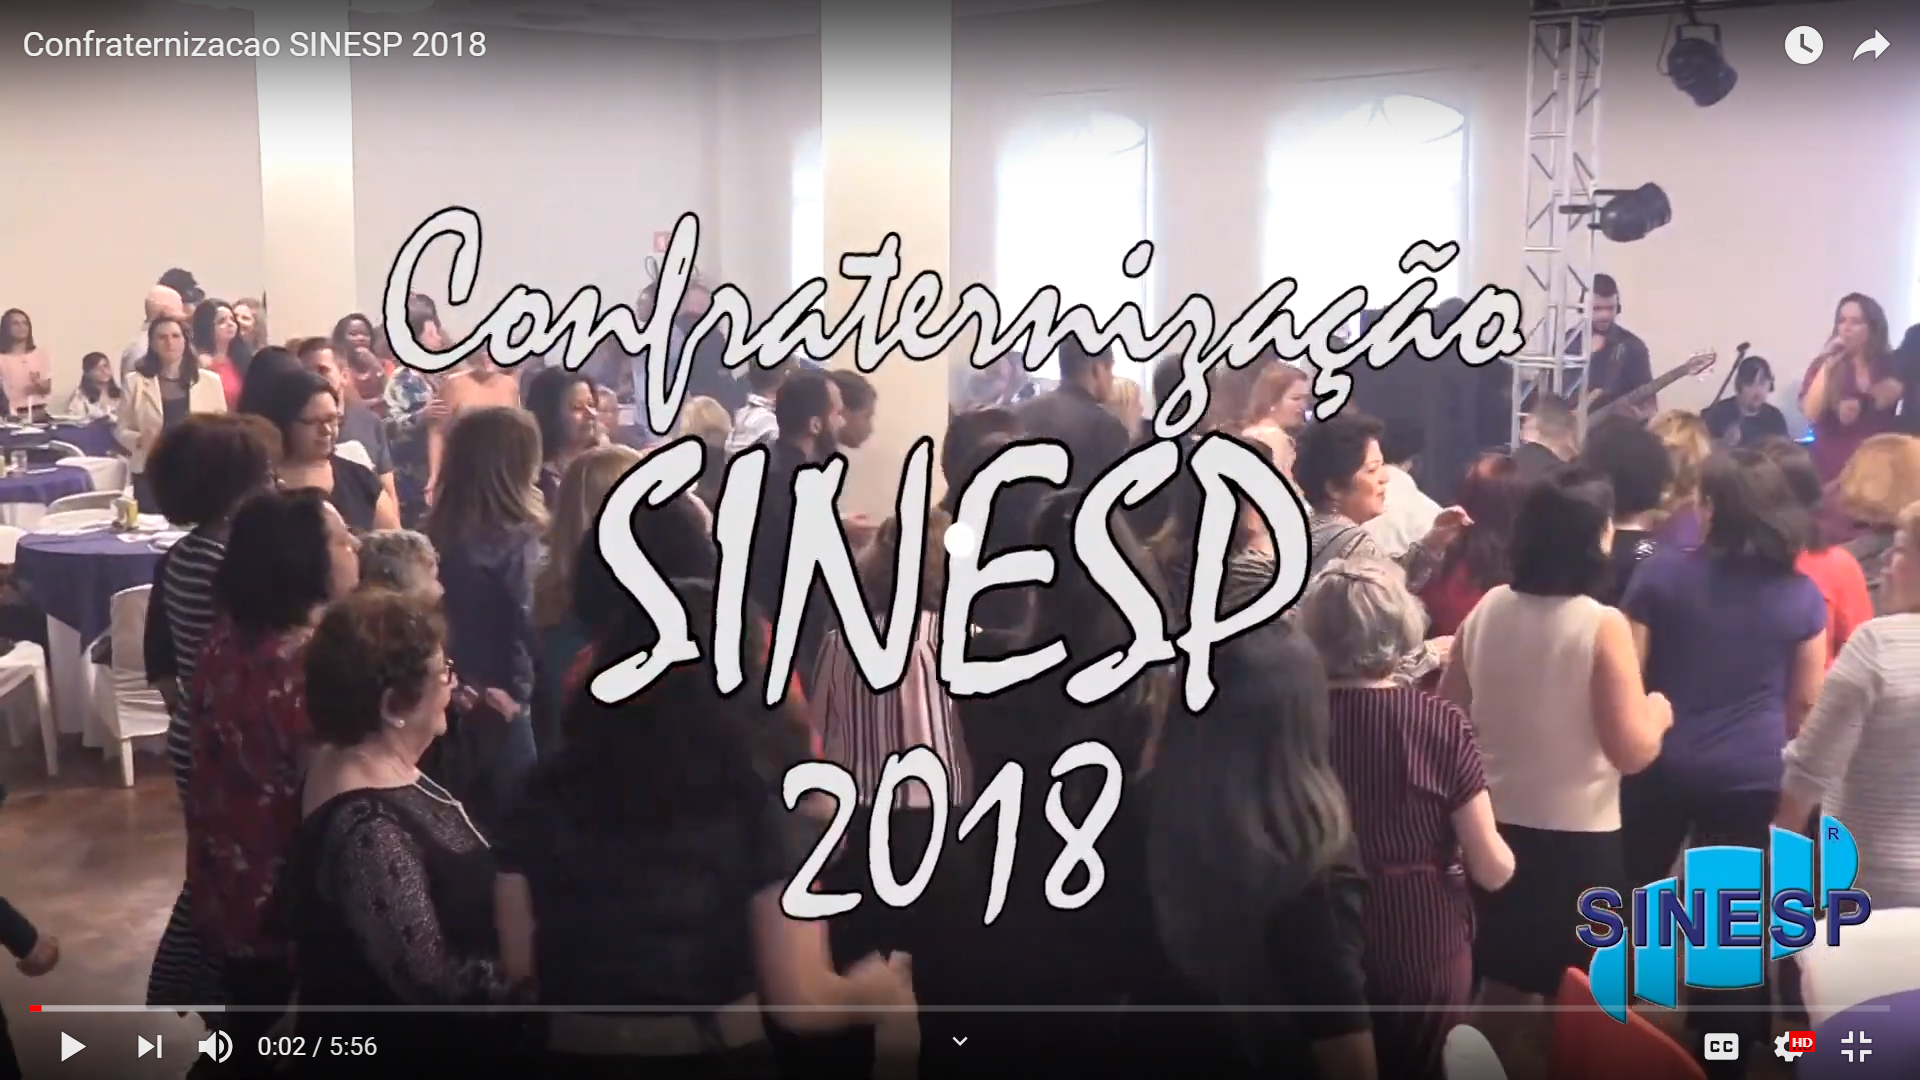 Confraternizacao SINESP 2018